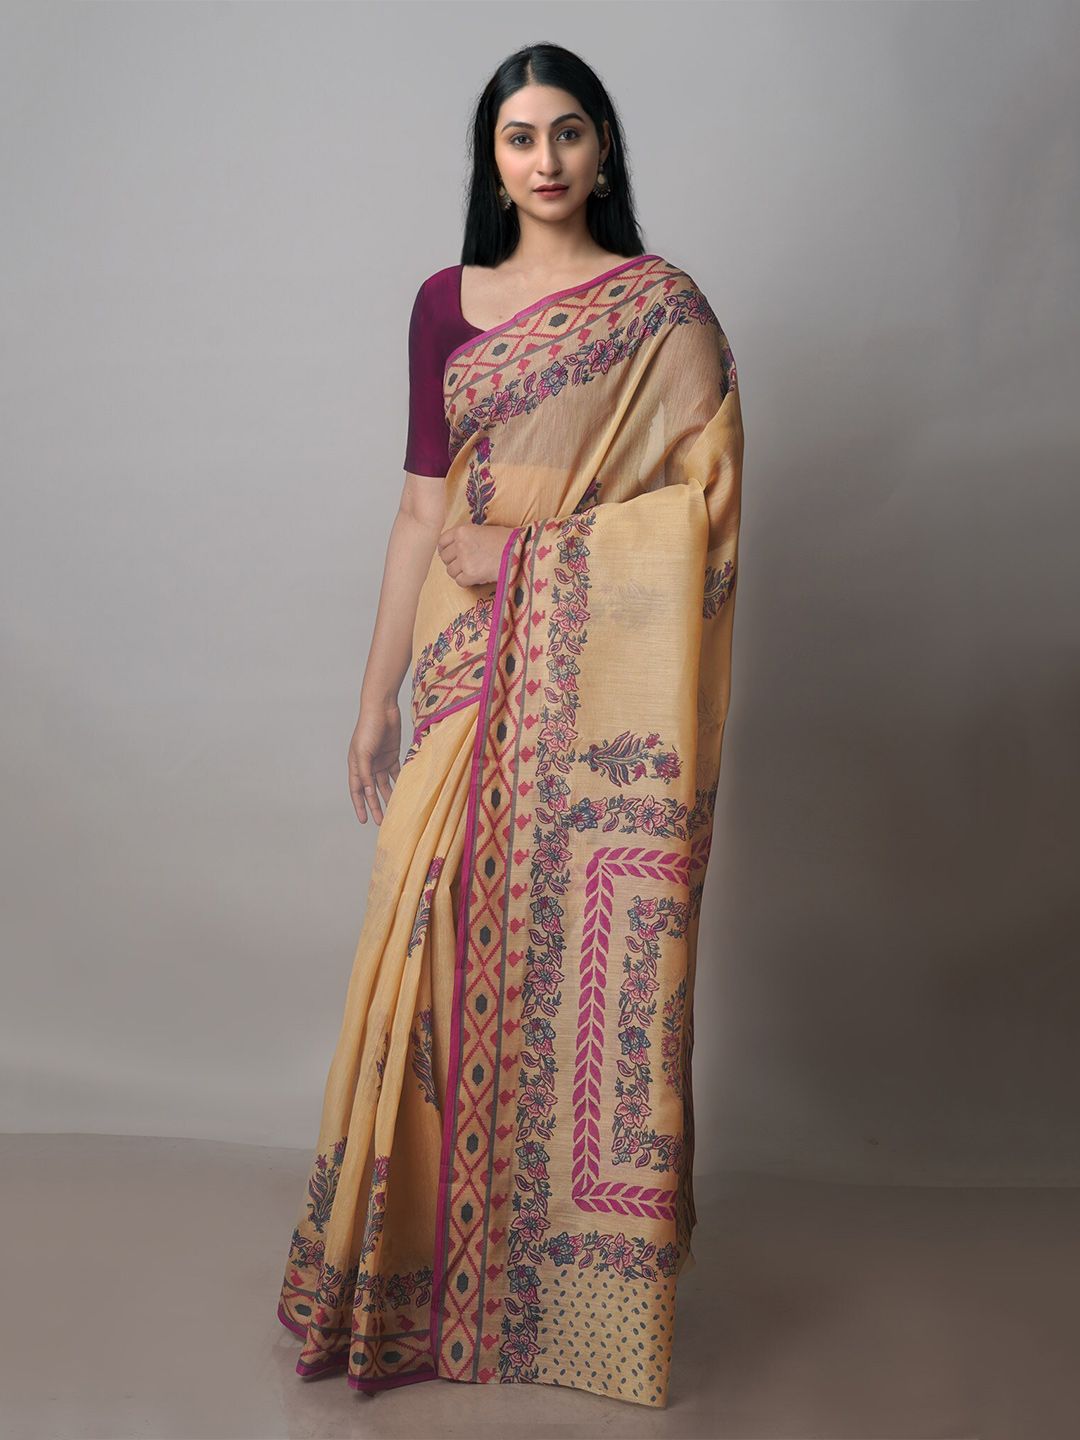 Unnati Silks Brown & Pink Ethnic Motifs Silk Cotton Chanderi Saree Price in India